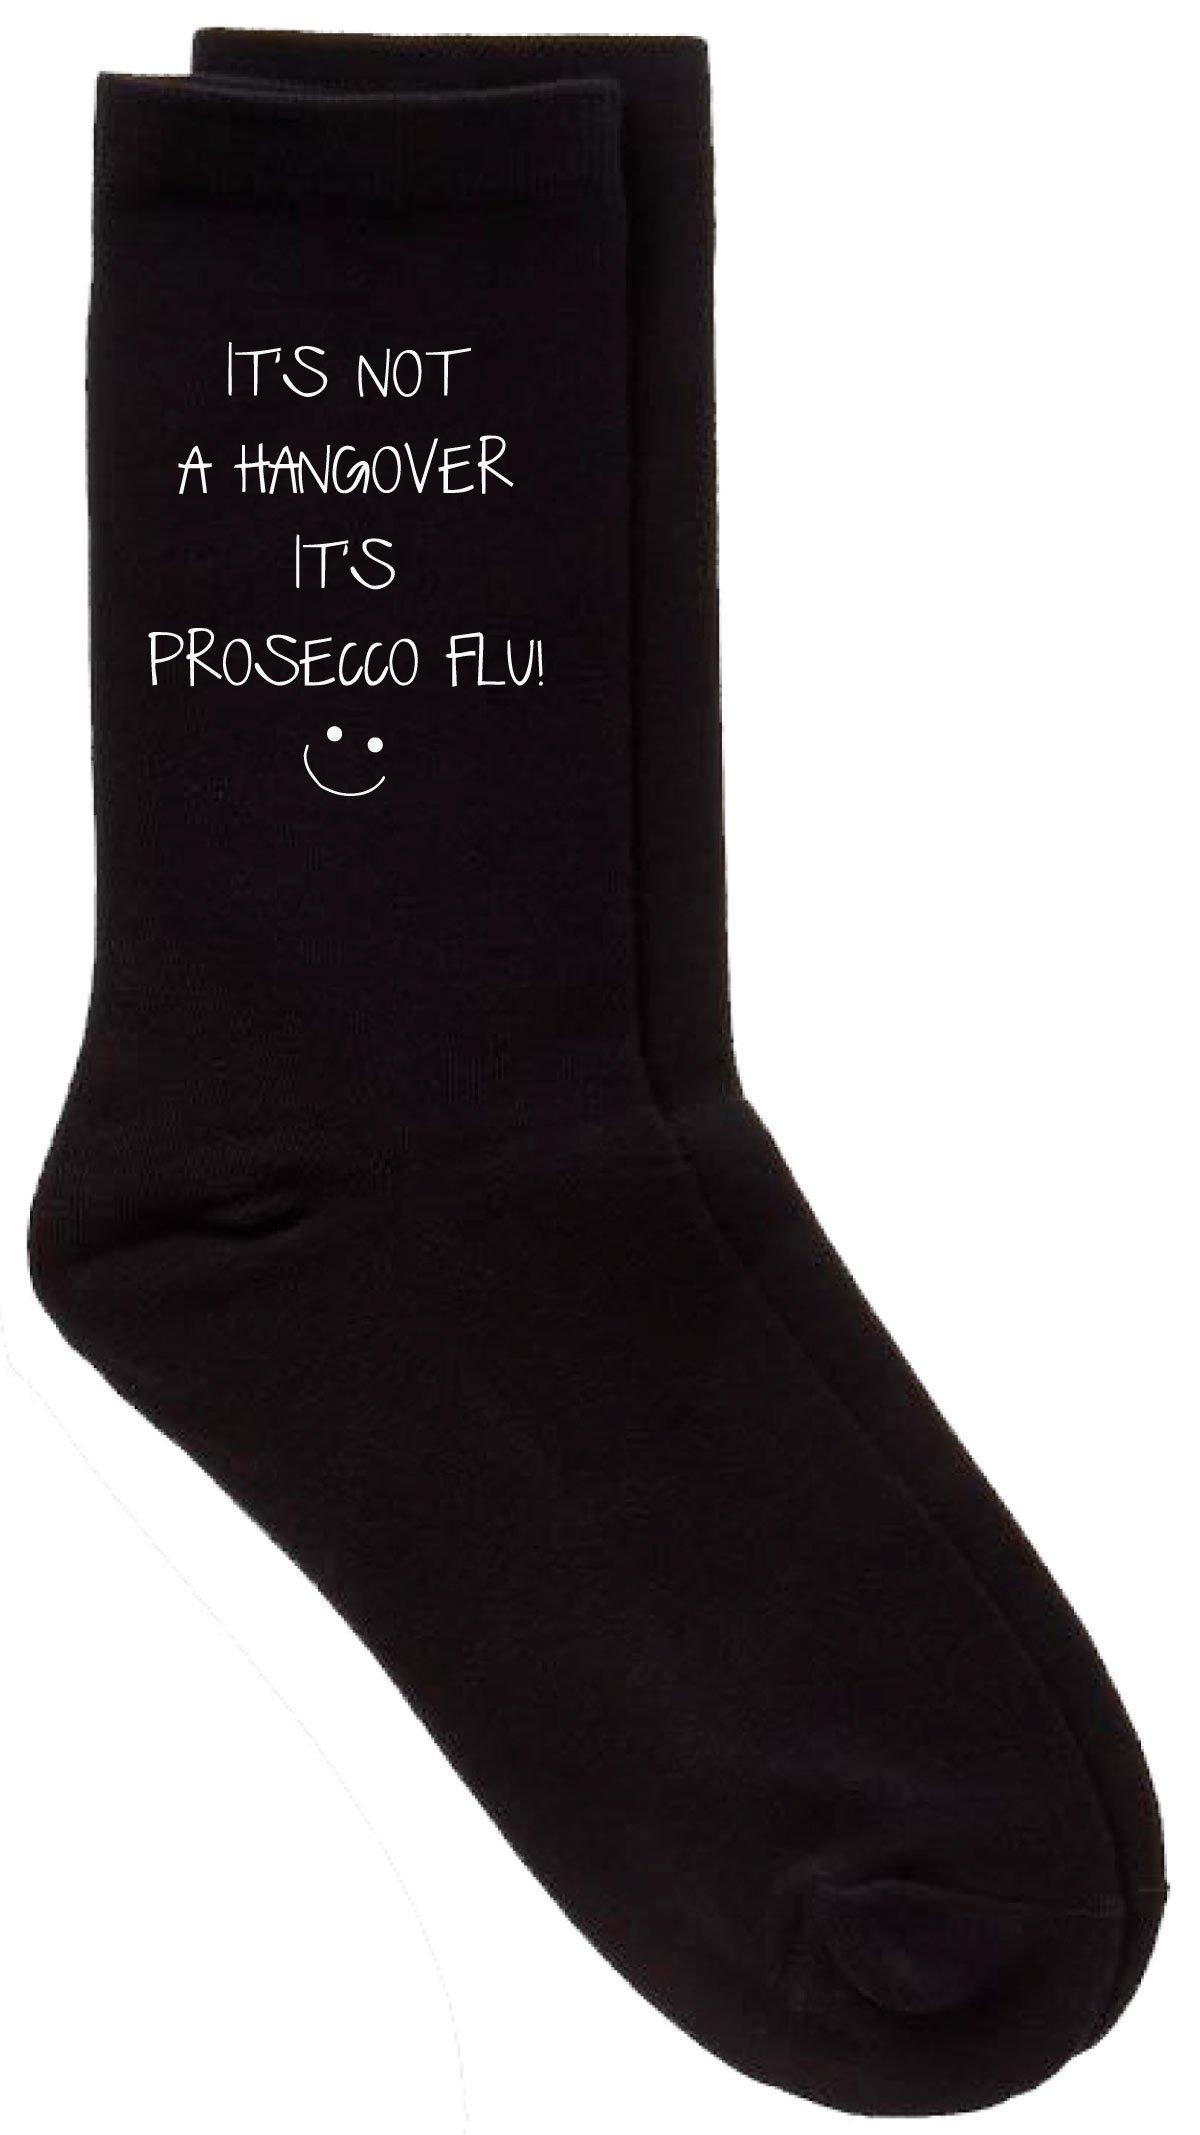 Prosecco Flu Black Socks